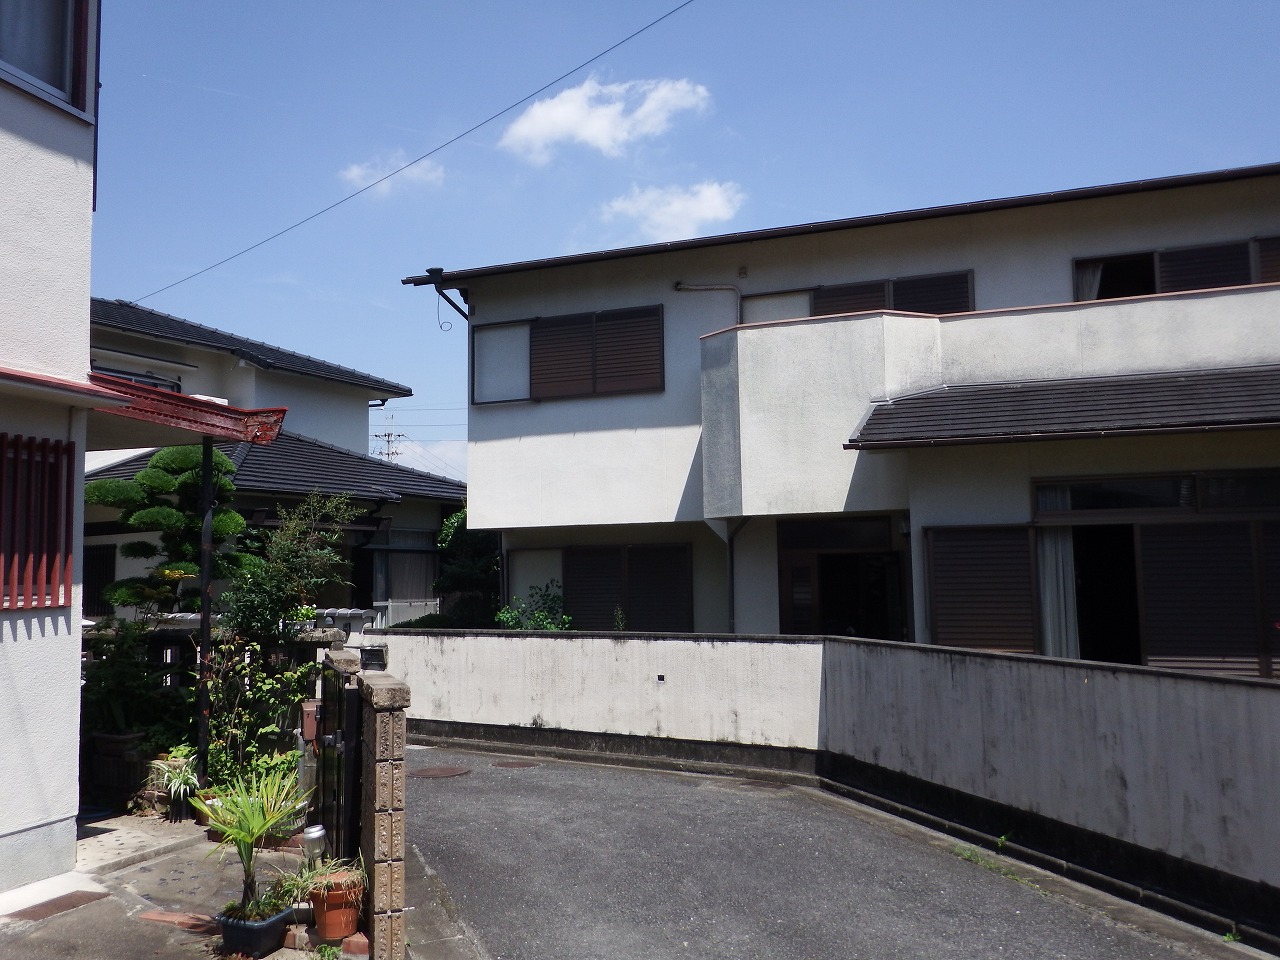 奈良市の購入検討中の中古住宅